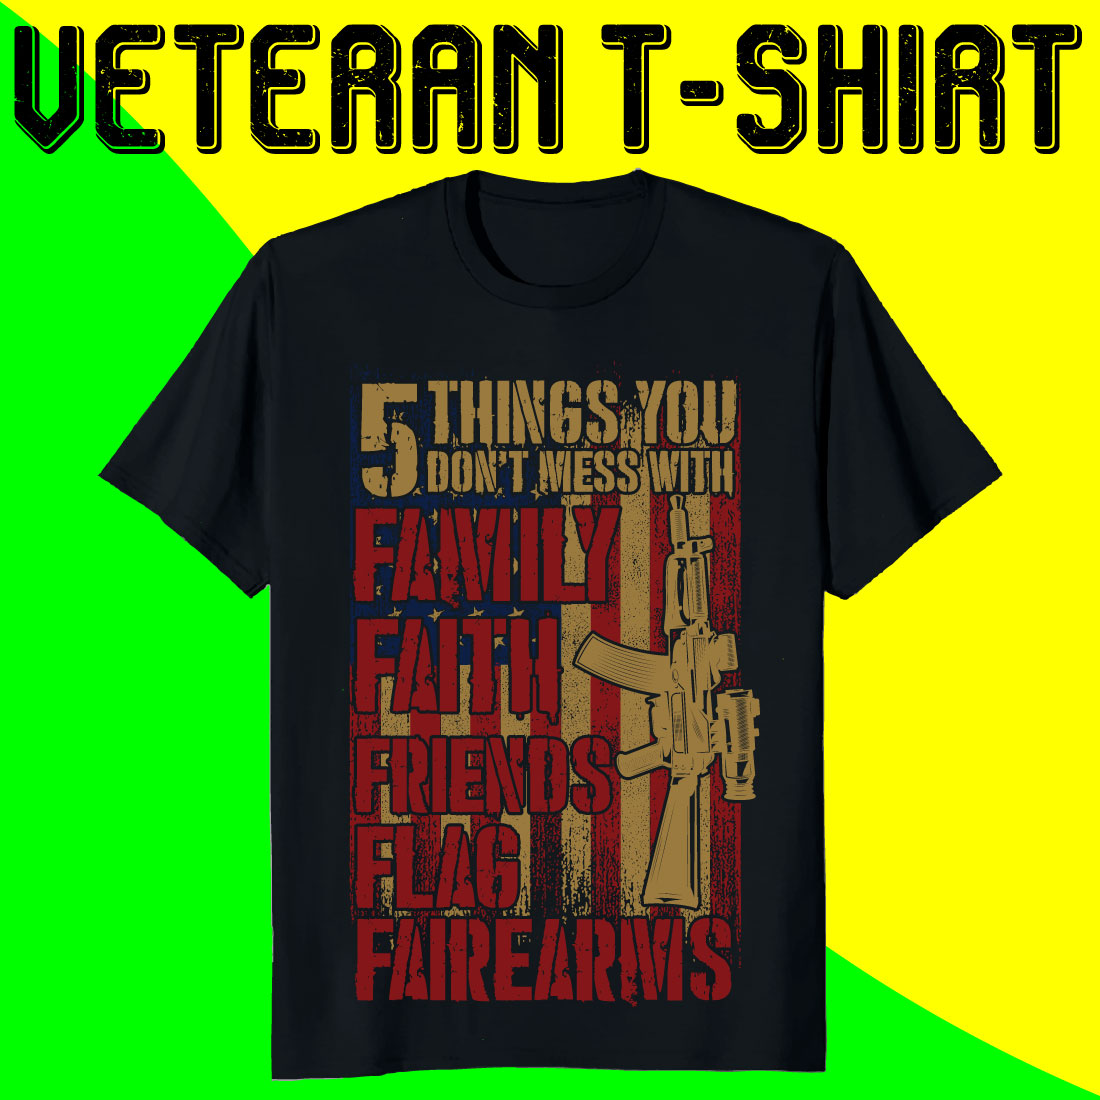 Veteran Faight T-shirt Designs Bundle preview image.